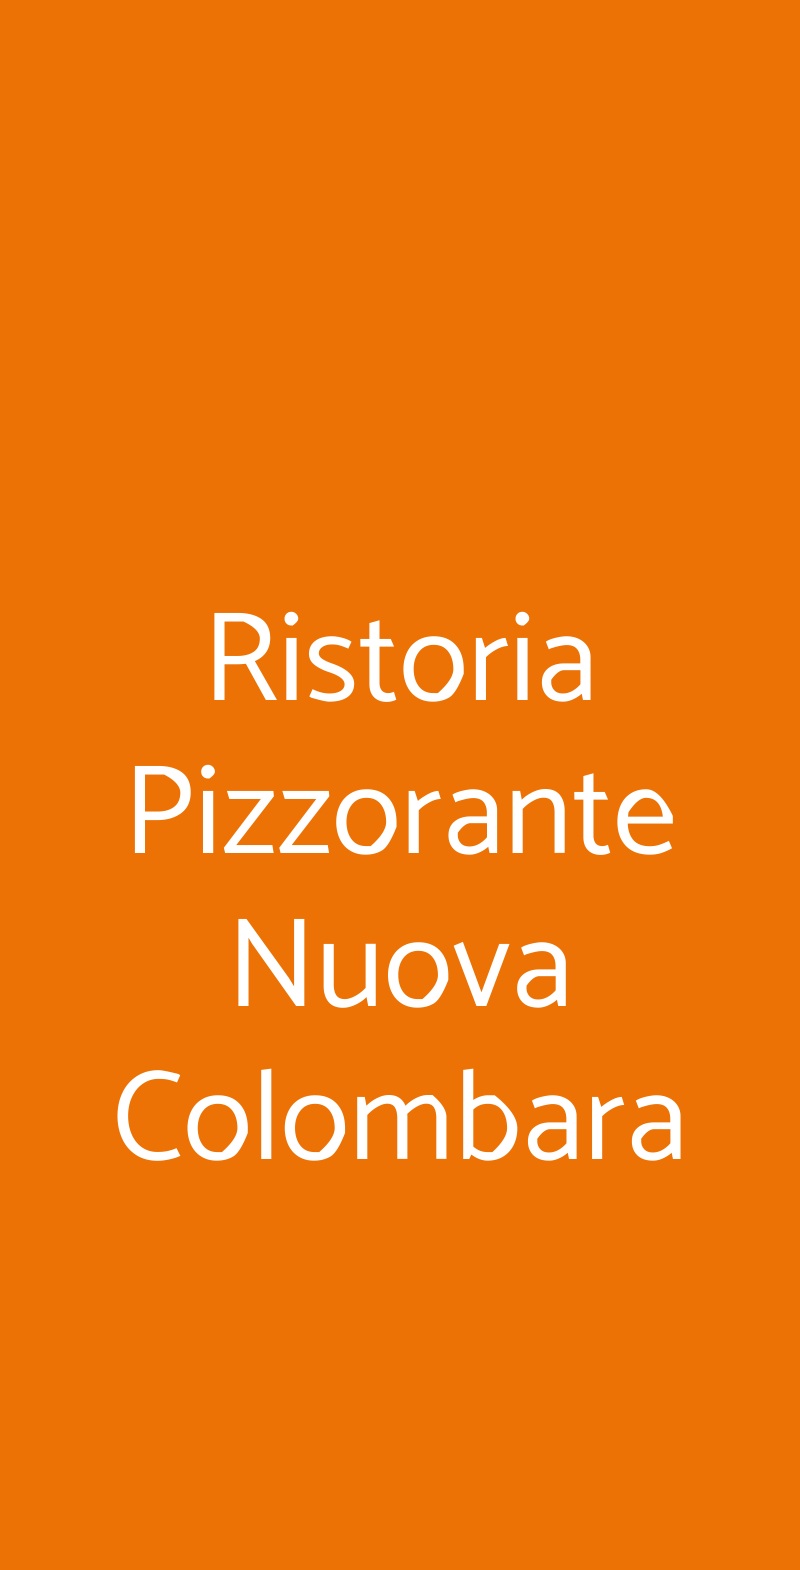 Ristoria Pizzorante Nuova Colombara Monte San Pietro menù 1 pagina